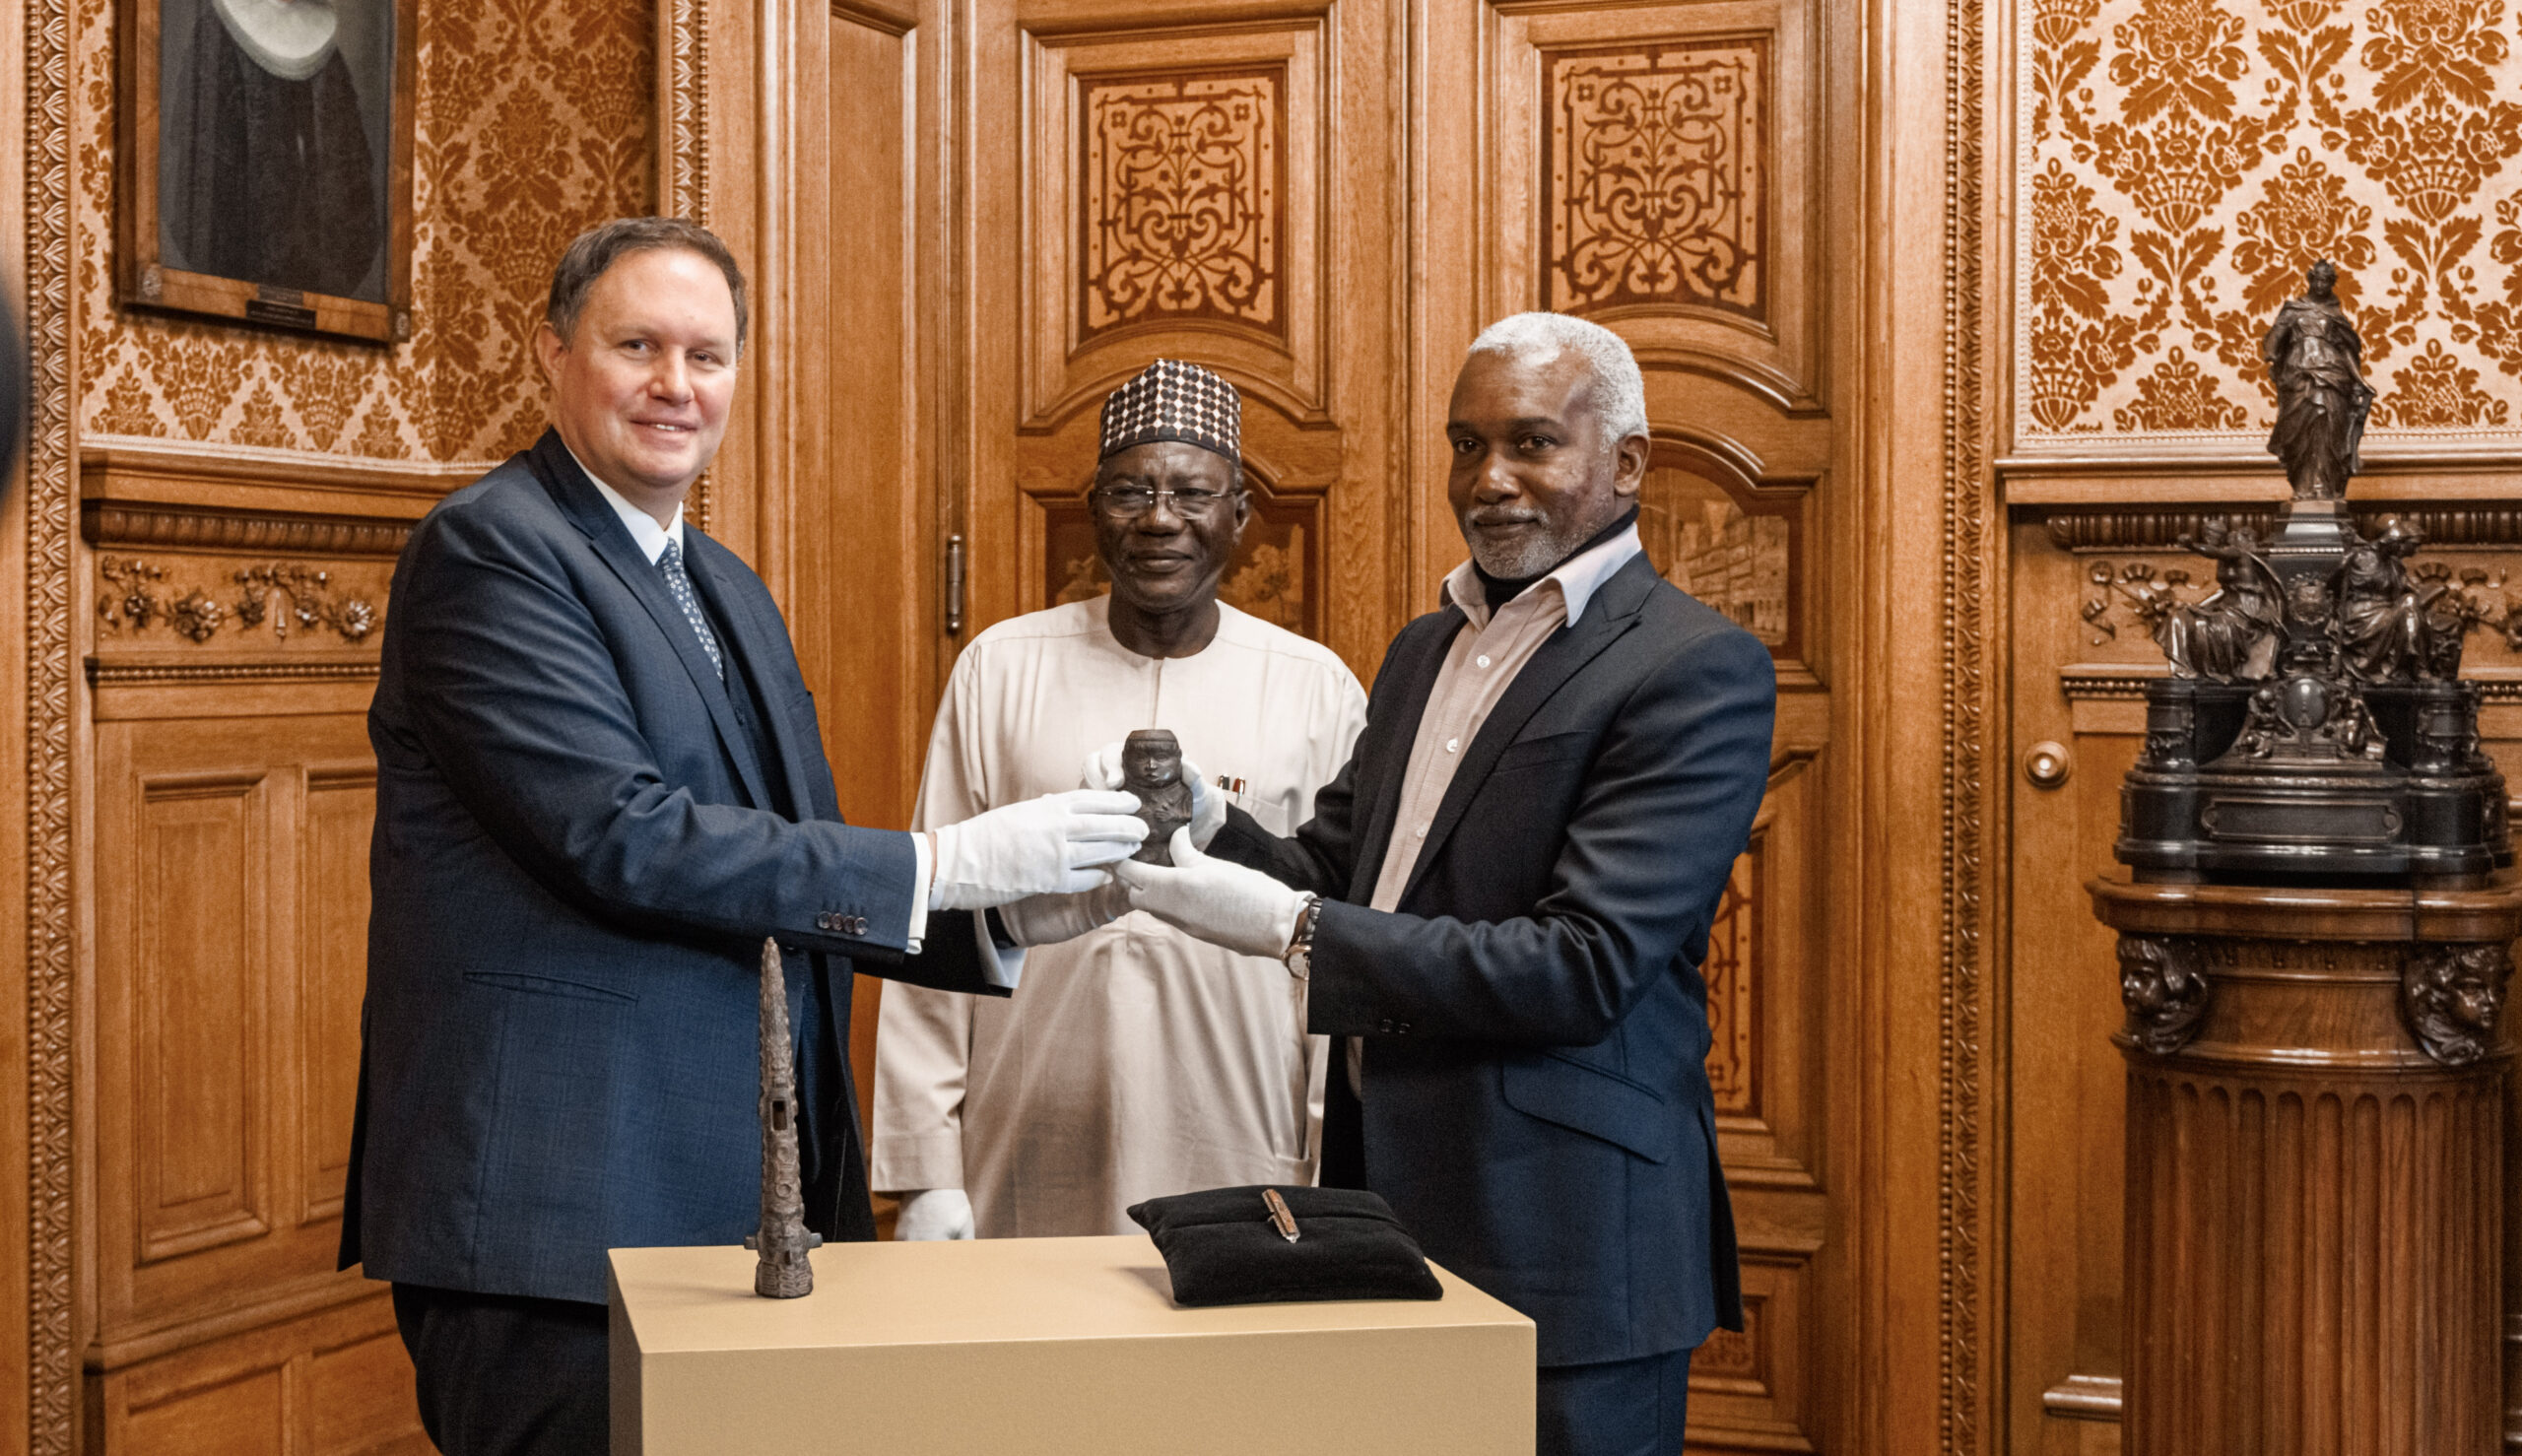 Carsten Brosda übergibt dem nigerianischen Botschafter Yusuf Madame Tuggur eine kleine Statue.